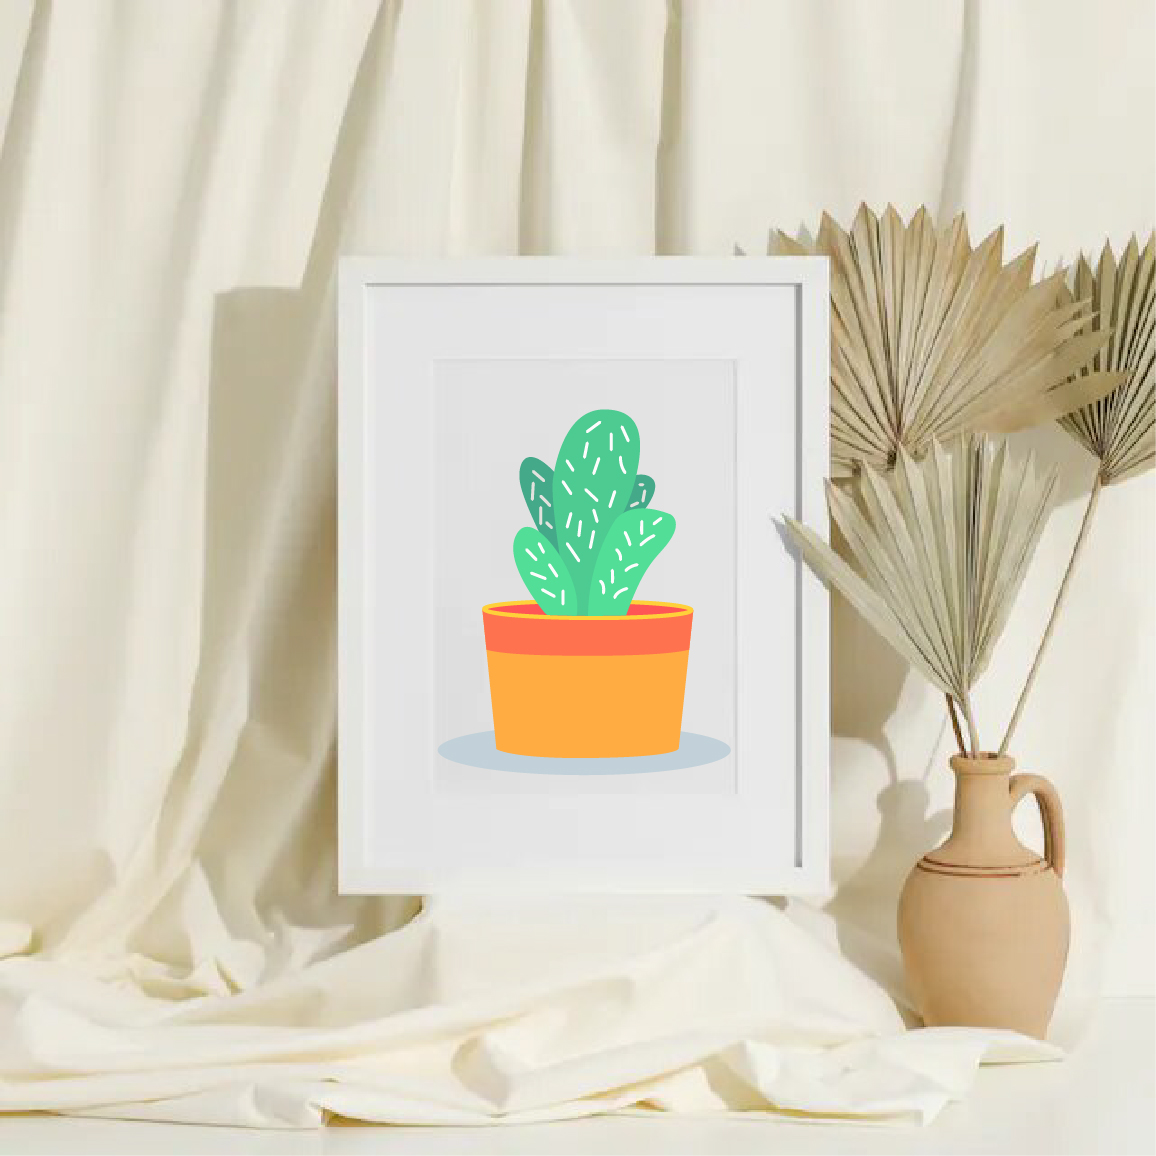 Cute Desert Cactus Vector - Design Shop by AquaDigitizing